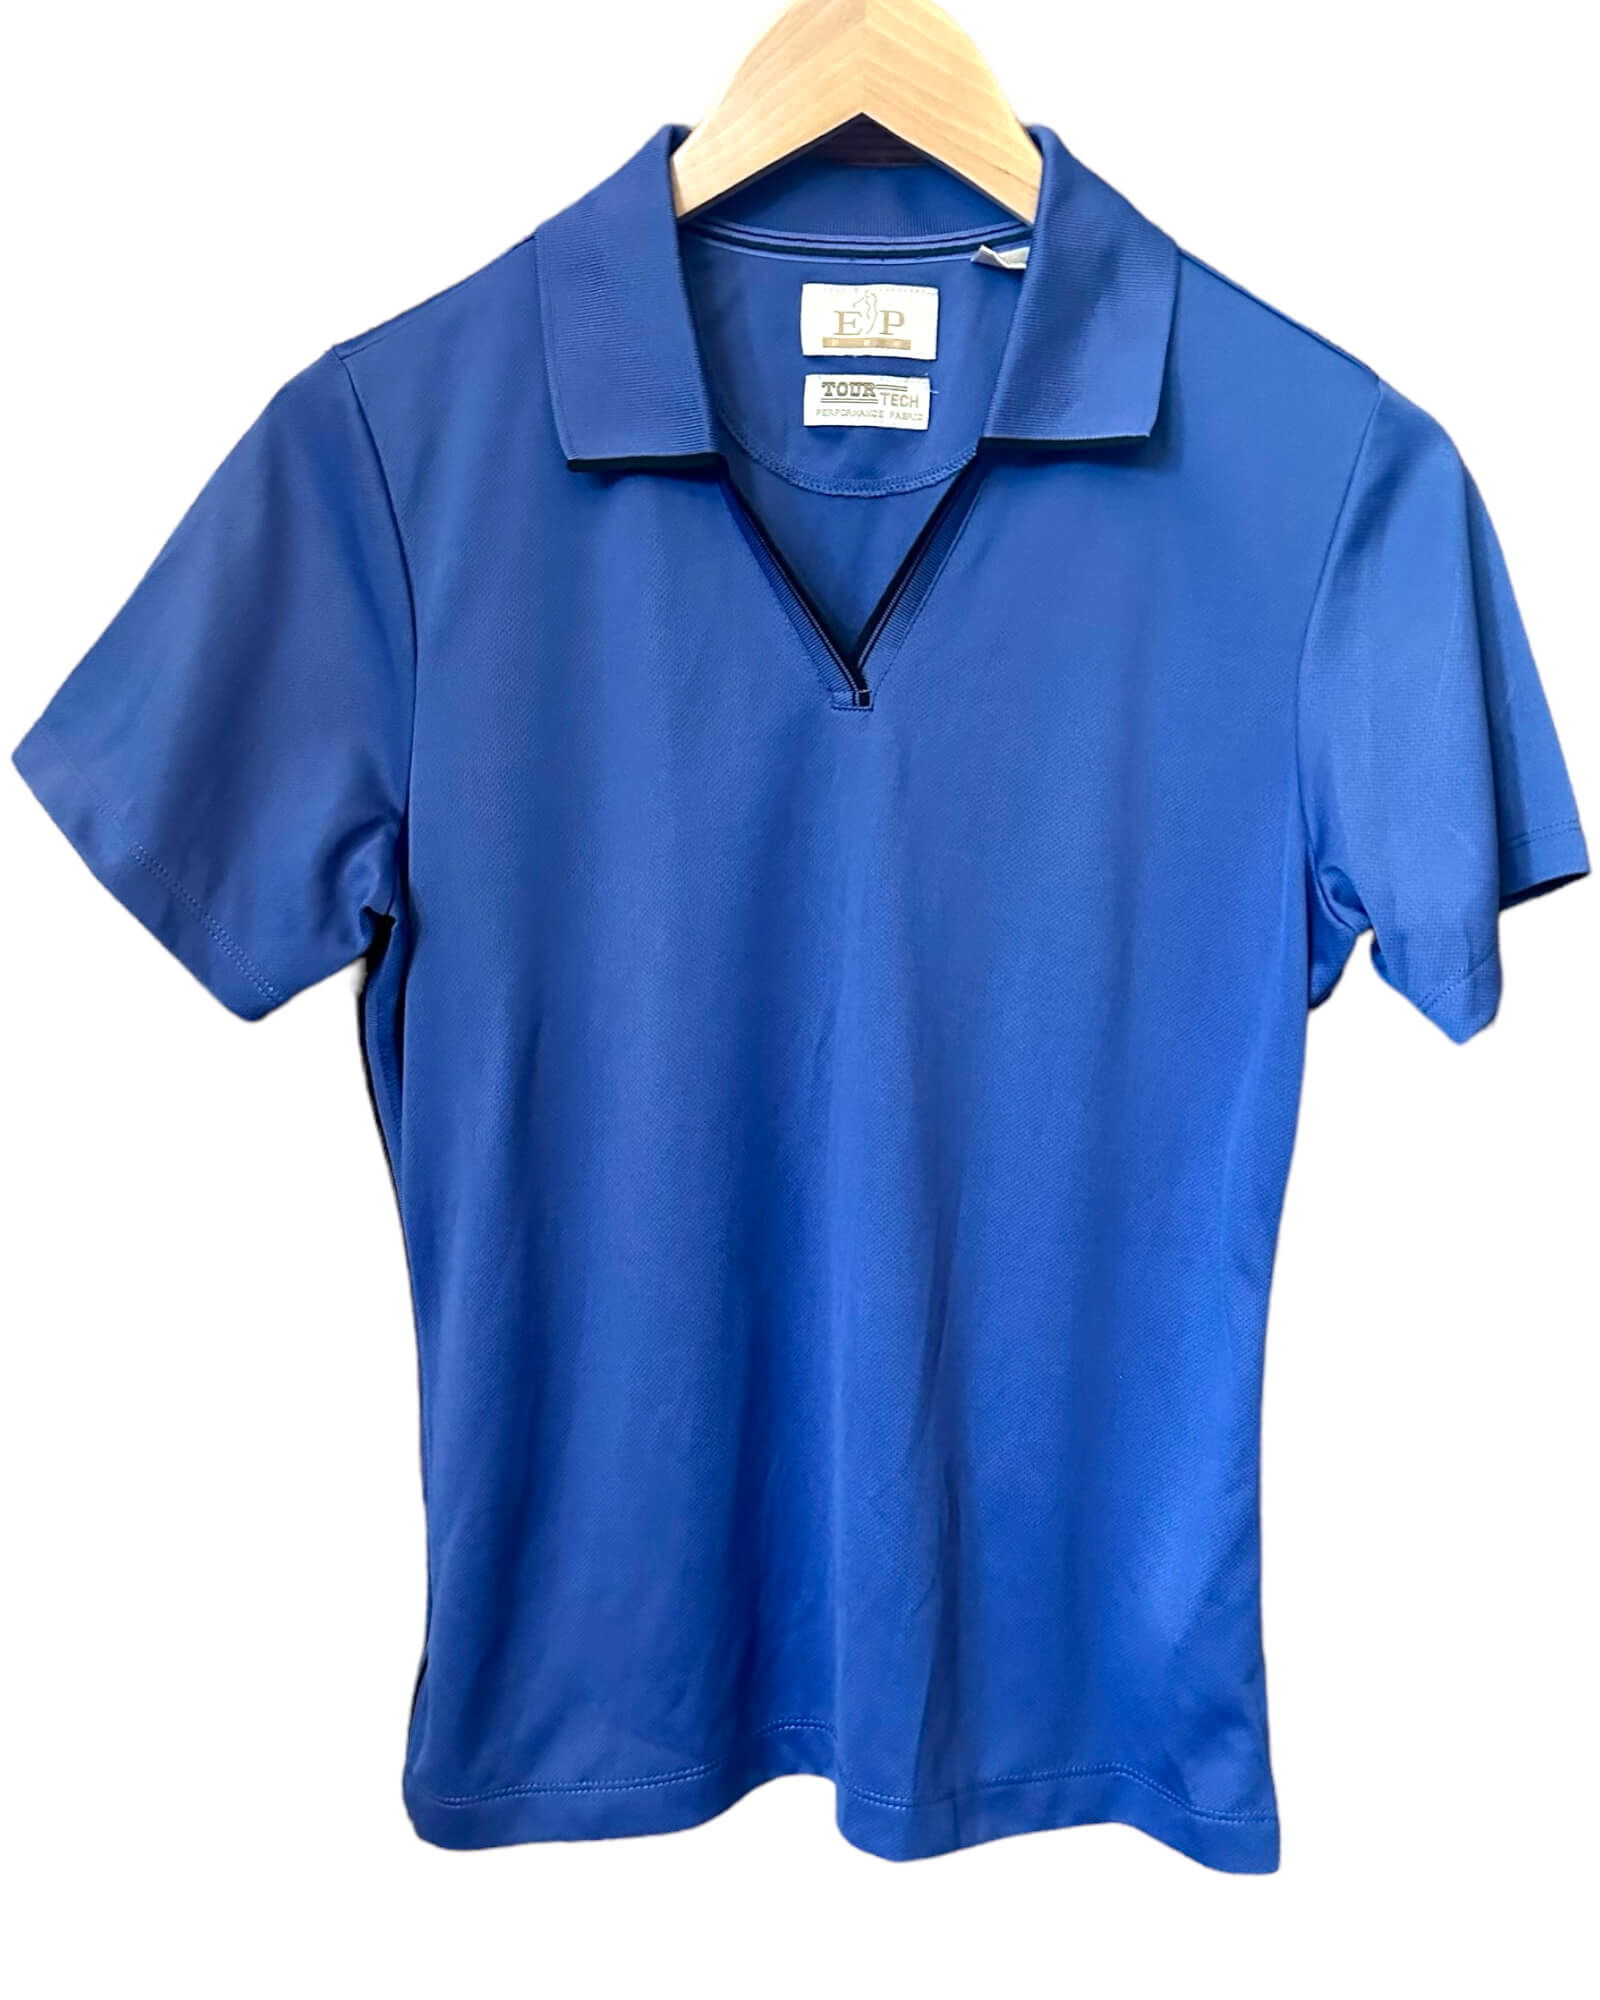 Cool Winter EP PRO blue golf shirt